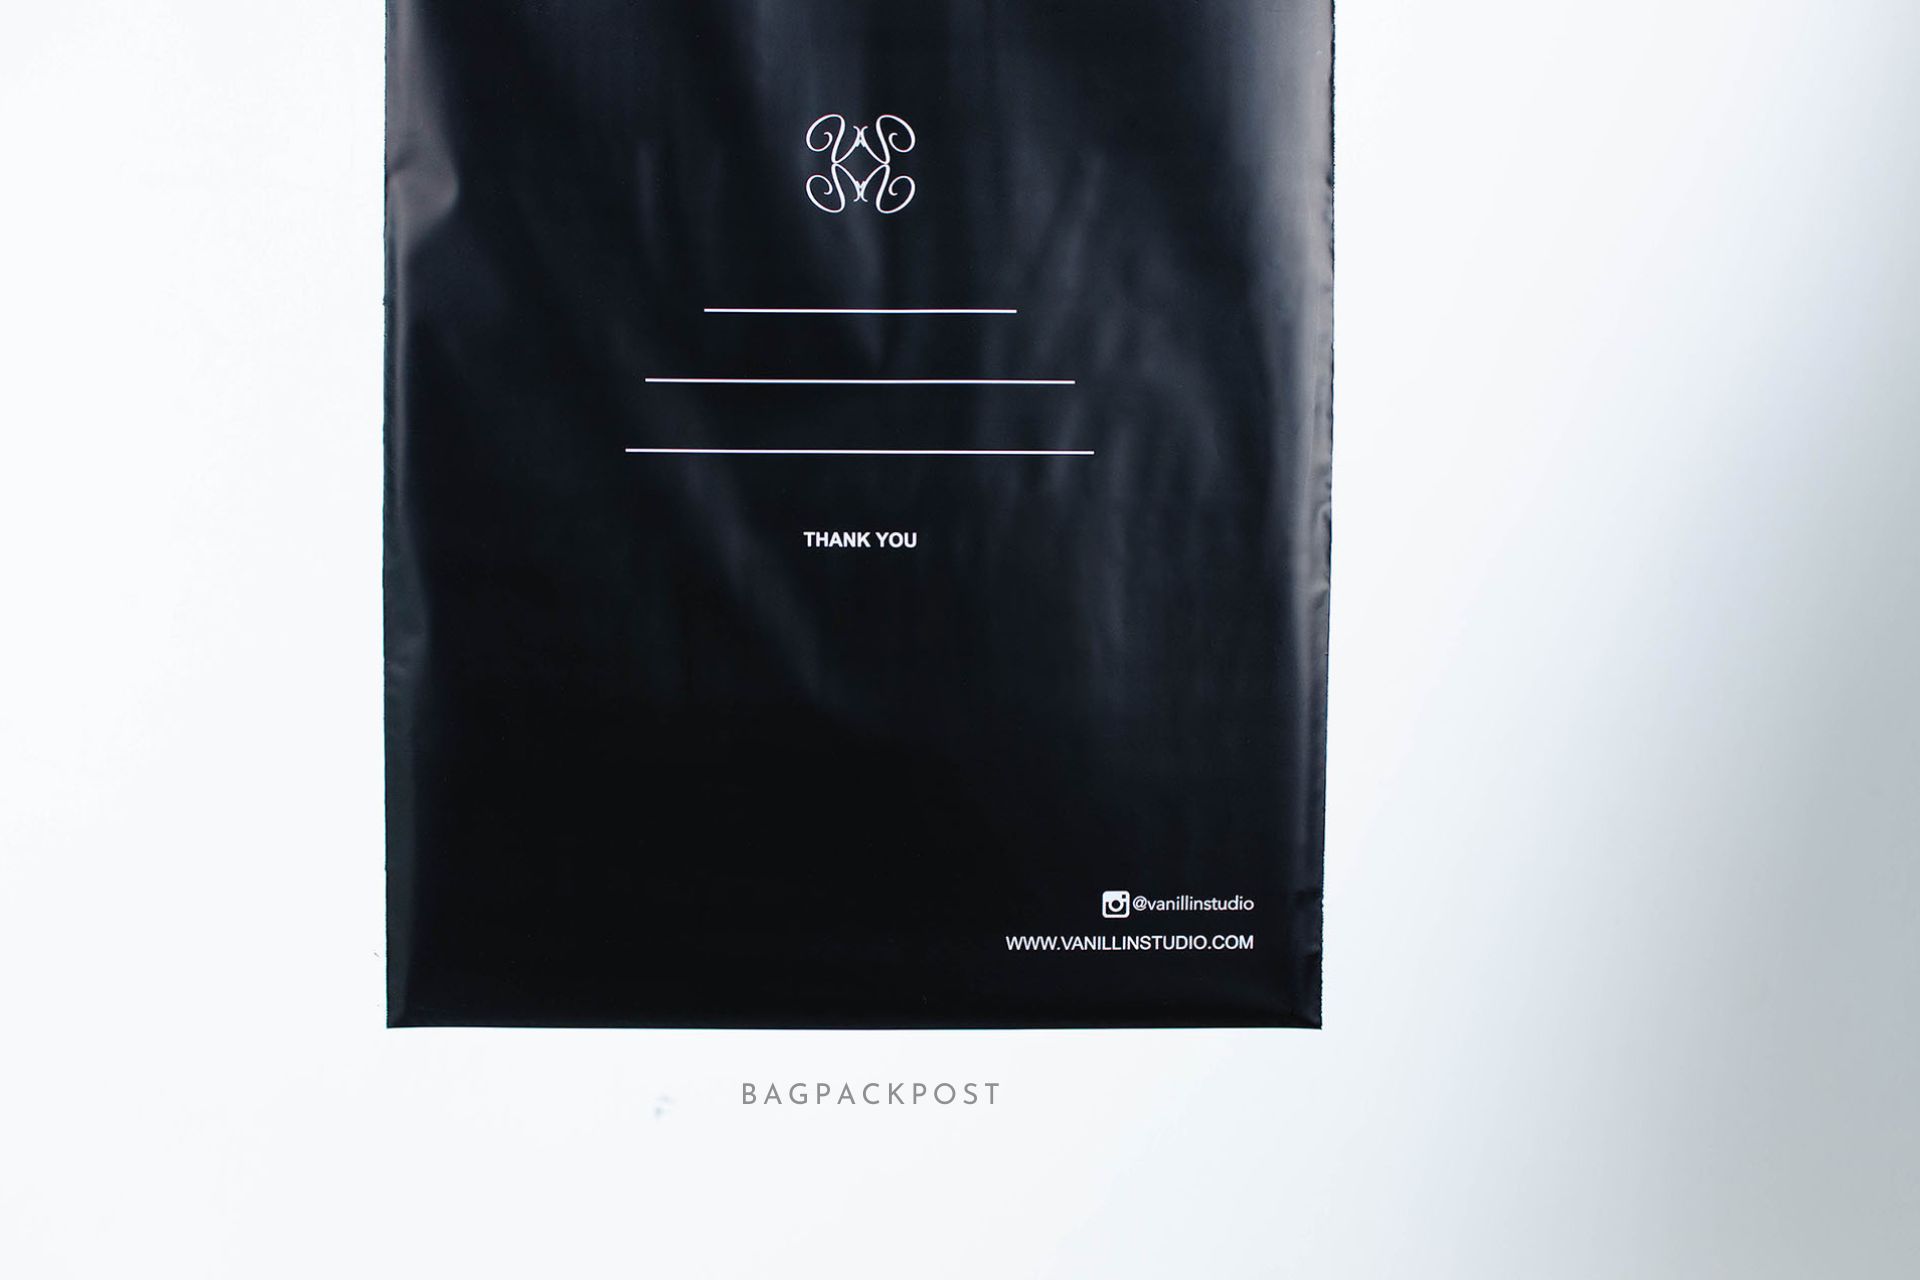 ผลิตถุงไปรษณีย์ ถุงพัสดุ ถุงพัสดุพิมพ์แบรนด์ ซองไปรษณีย์พิมพ์ลาย Vanillin Studio ซองไปรษณีย์สีดำ ถุงไปรษณีย์พิมพ์ลาย 3 BagPackPost